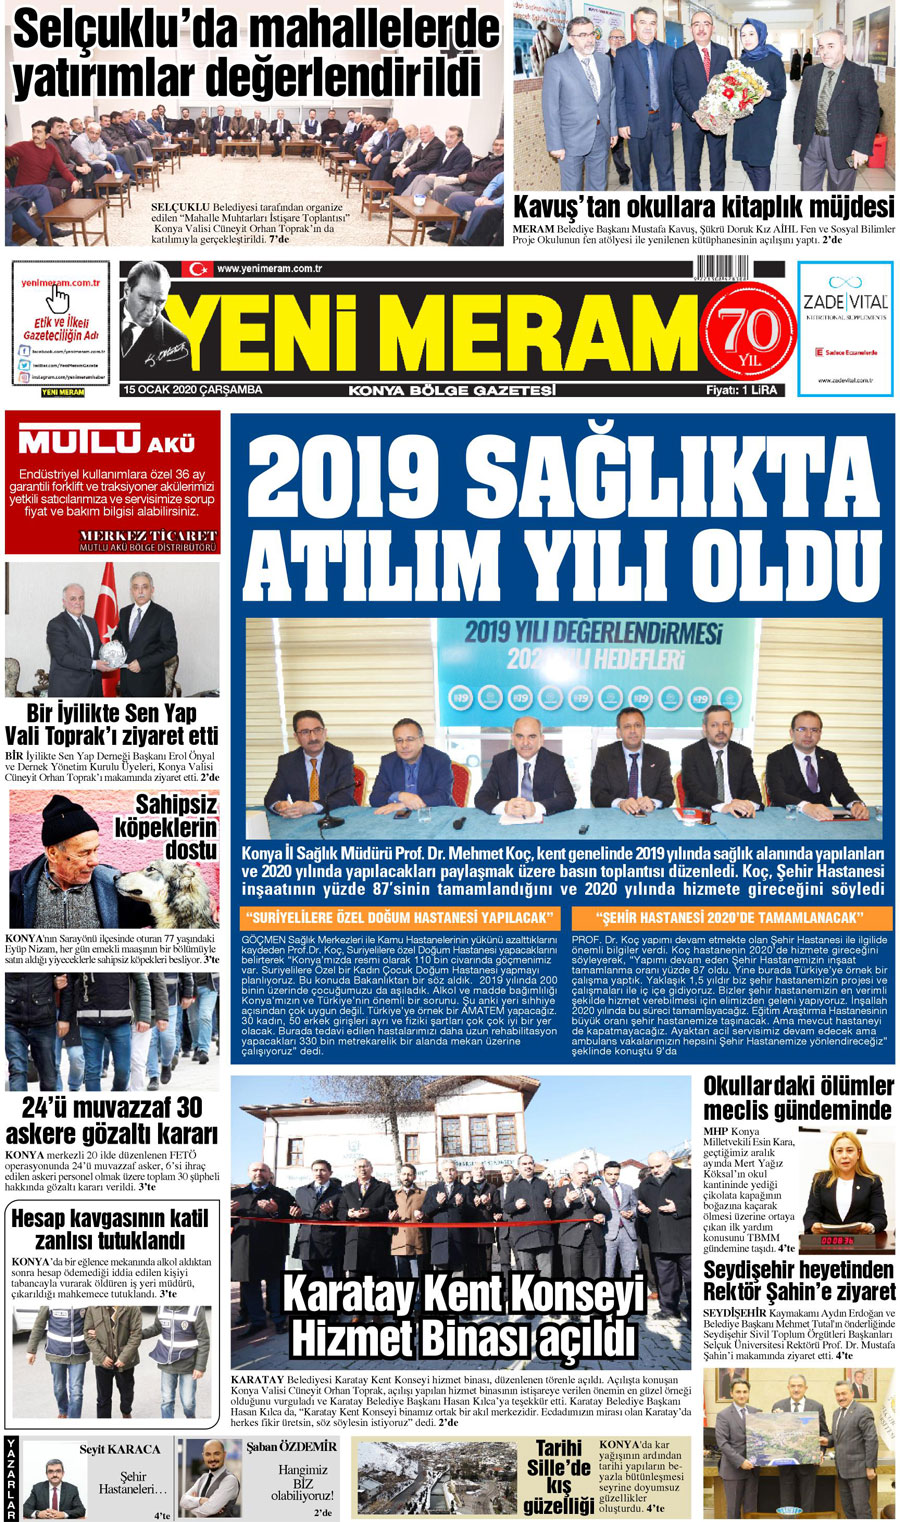 15 Ocak 2020 Yeni Meram Gazetesi